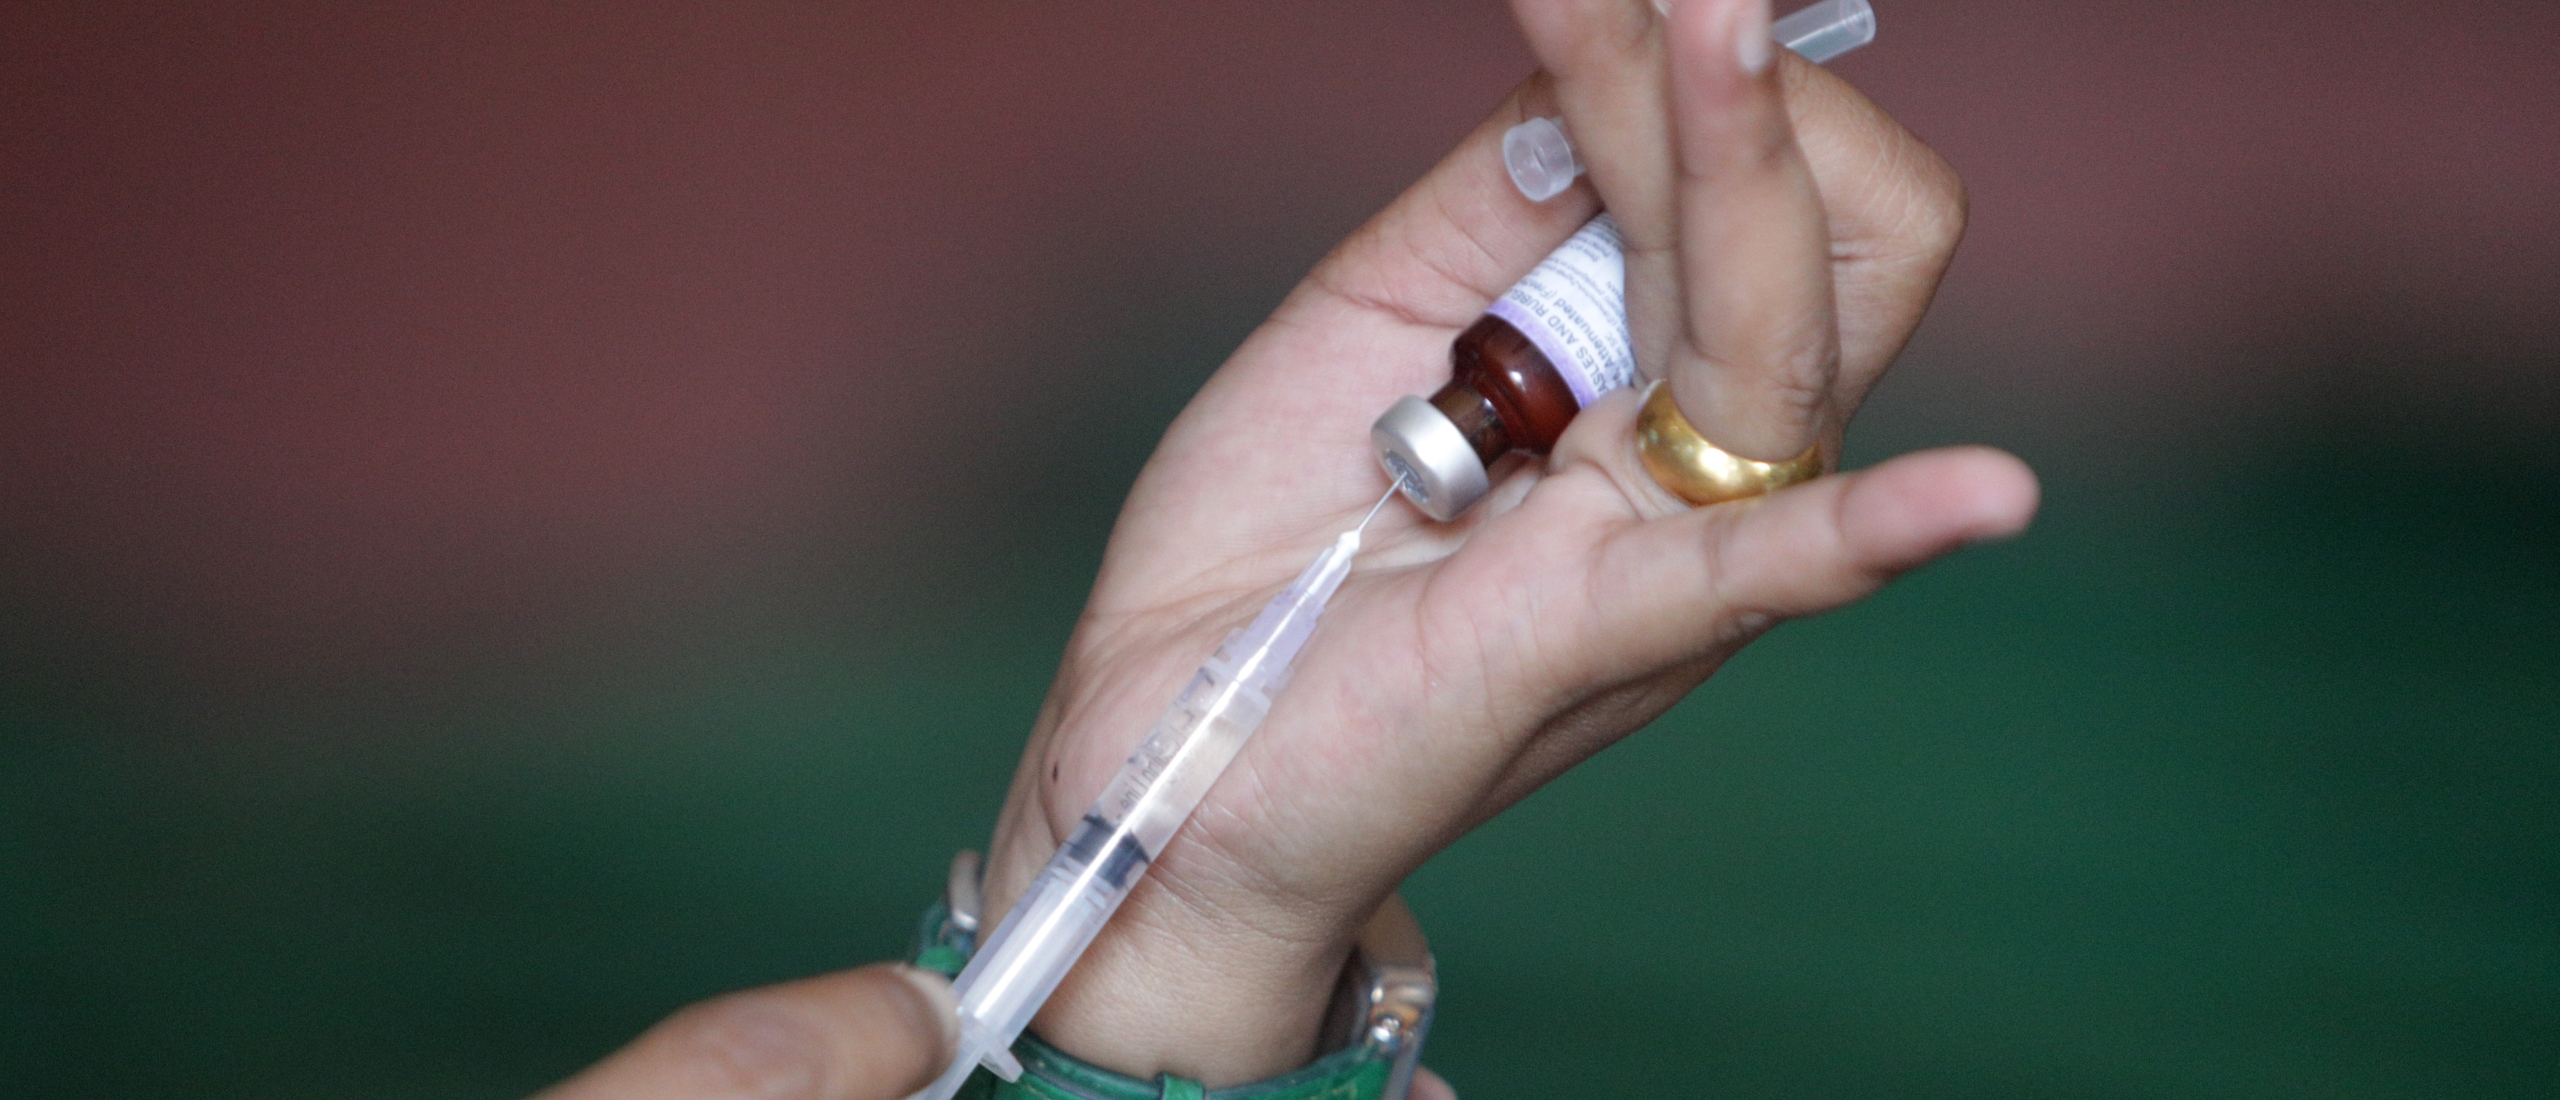 Huisartsenclub: tetanusvaccins weer normaal beschikbaar